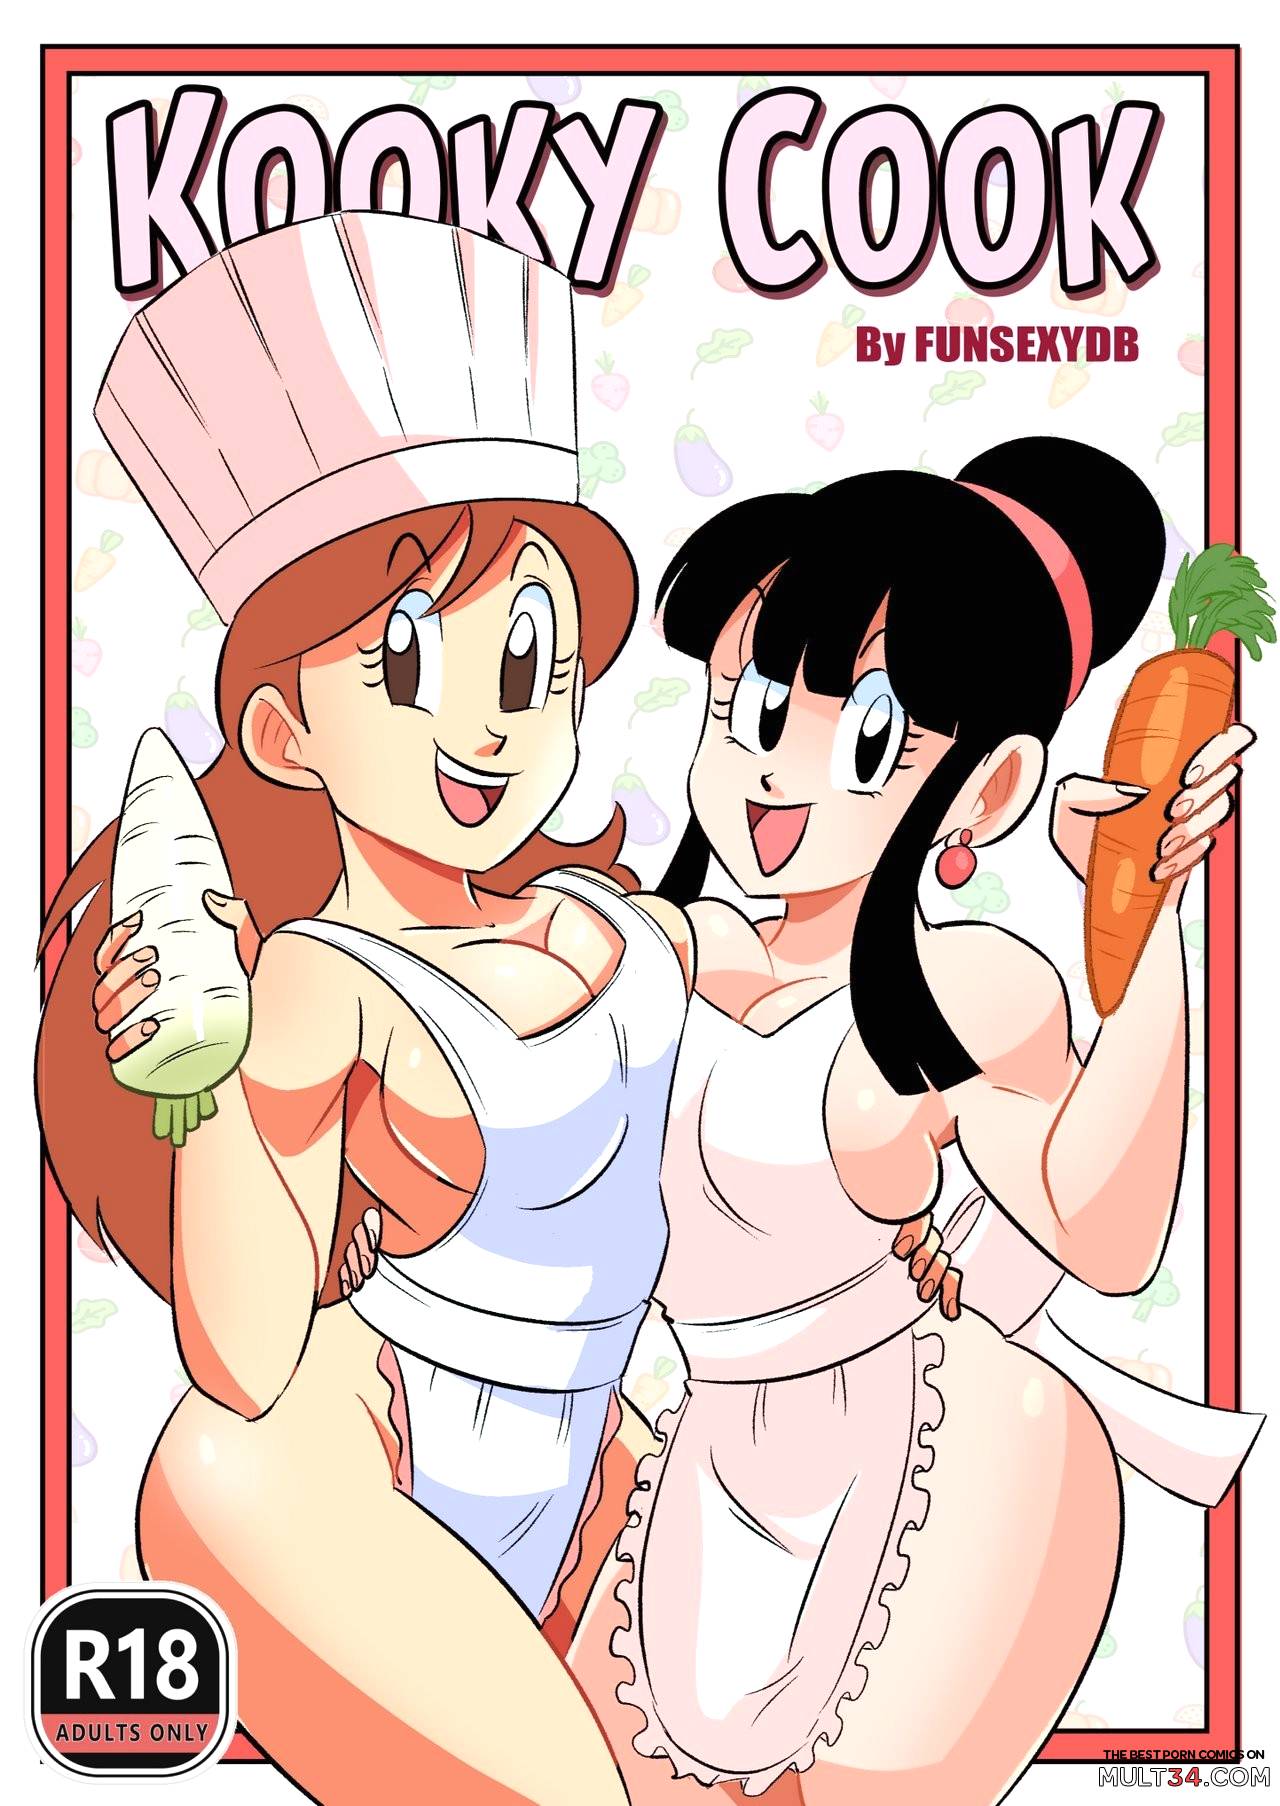 Cooking porn comics